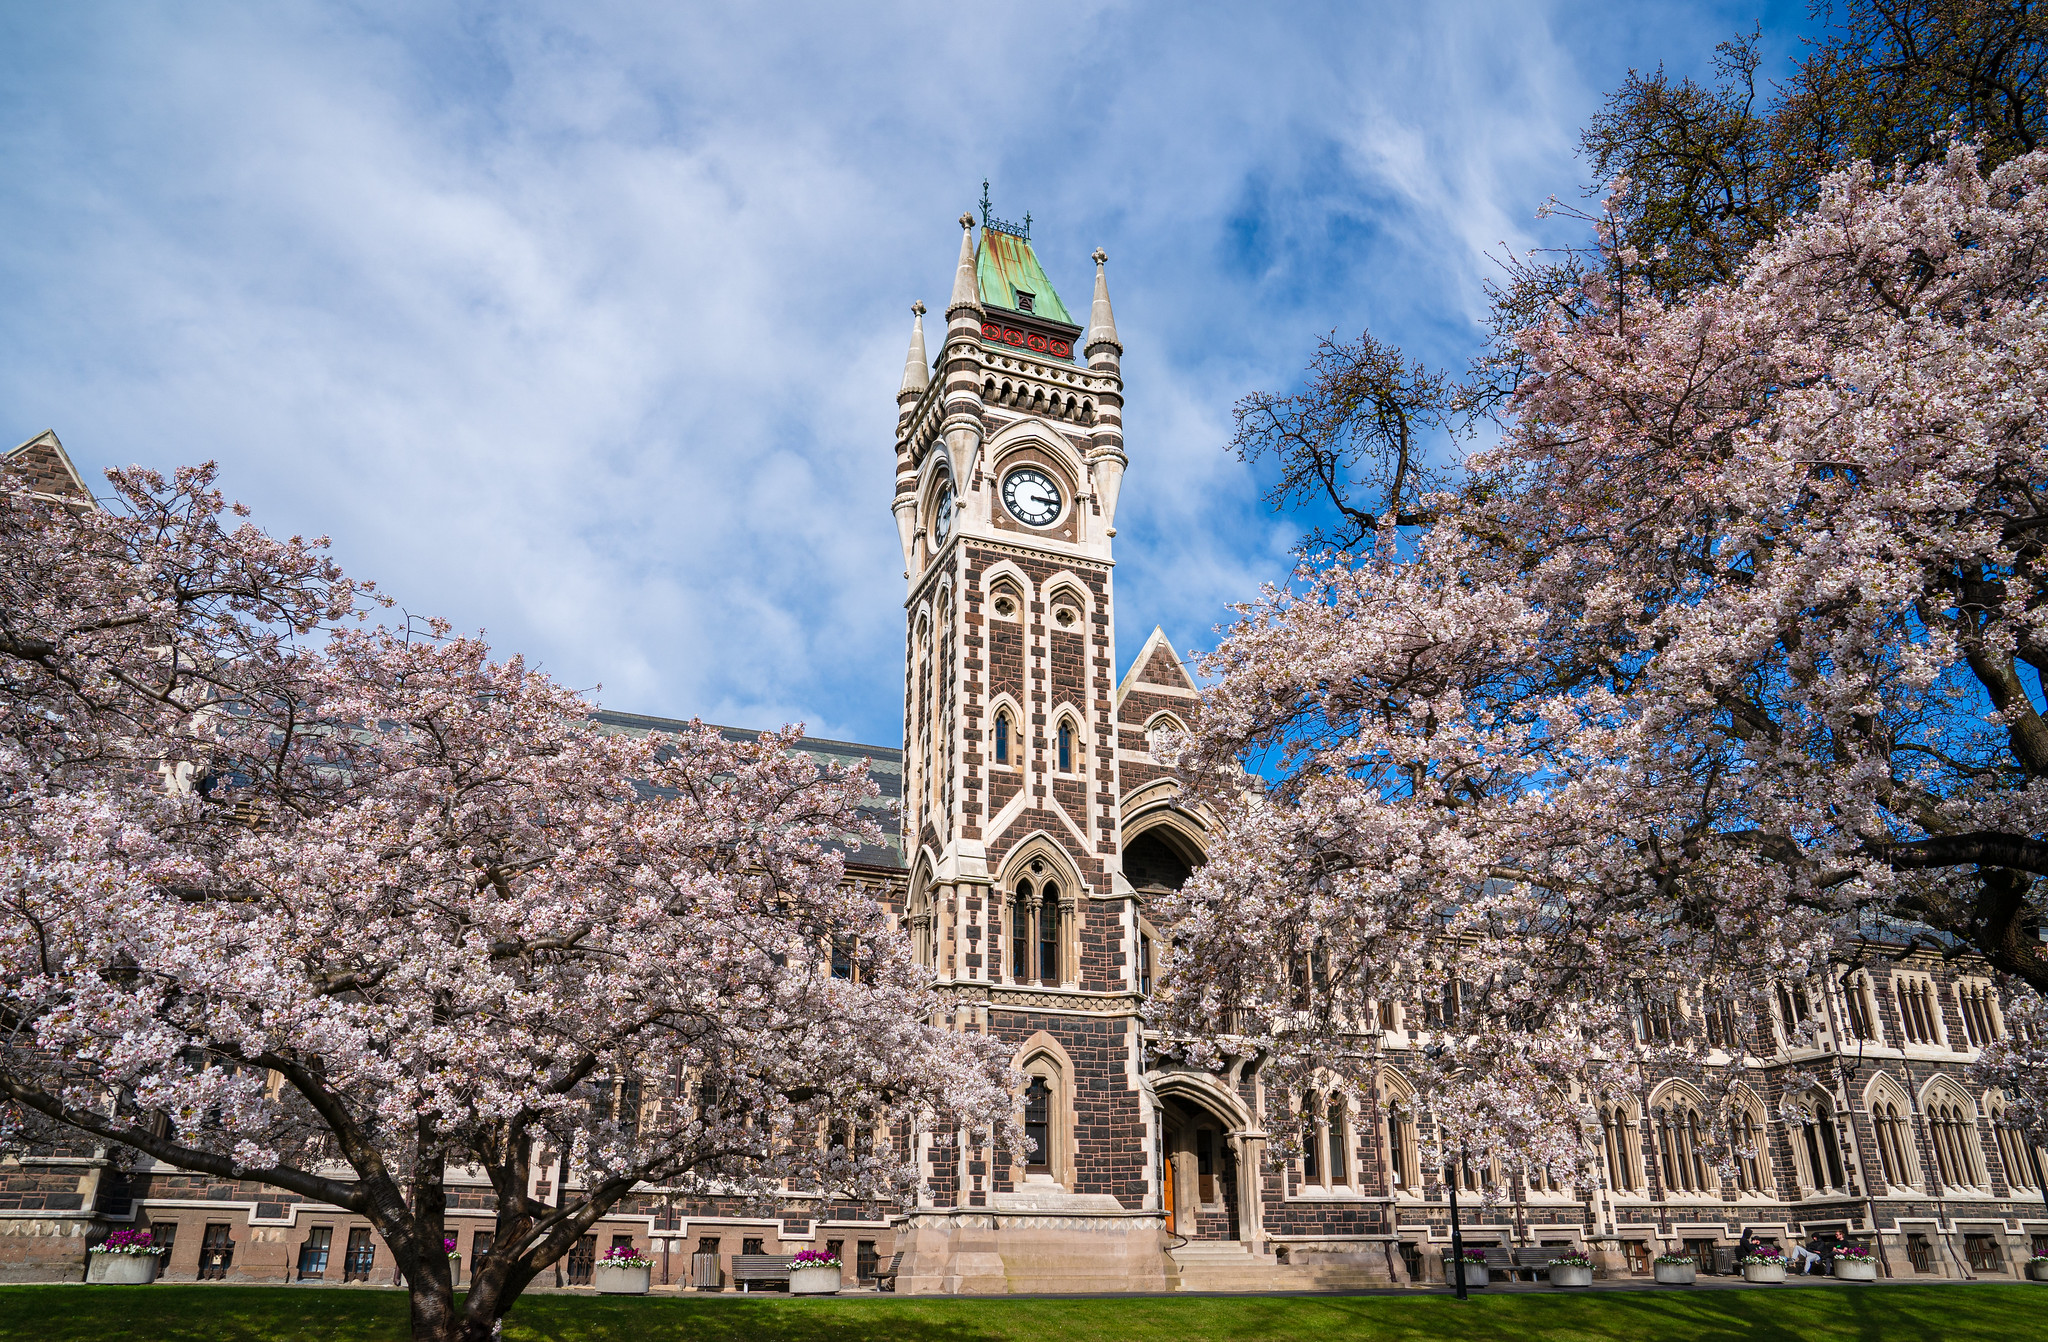 เรียนต่อปริญญาตรี University of Otago ประเทศนิวซีแลนด์ - ปรึกษาแนะแนวฟรี!